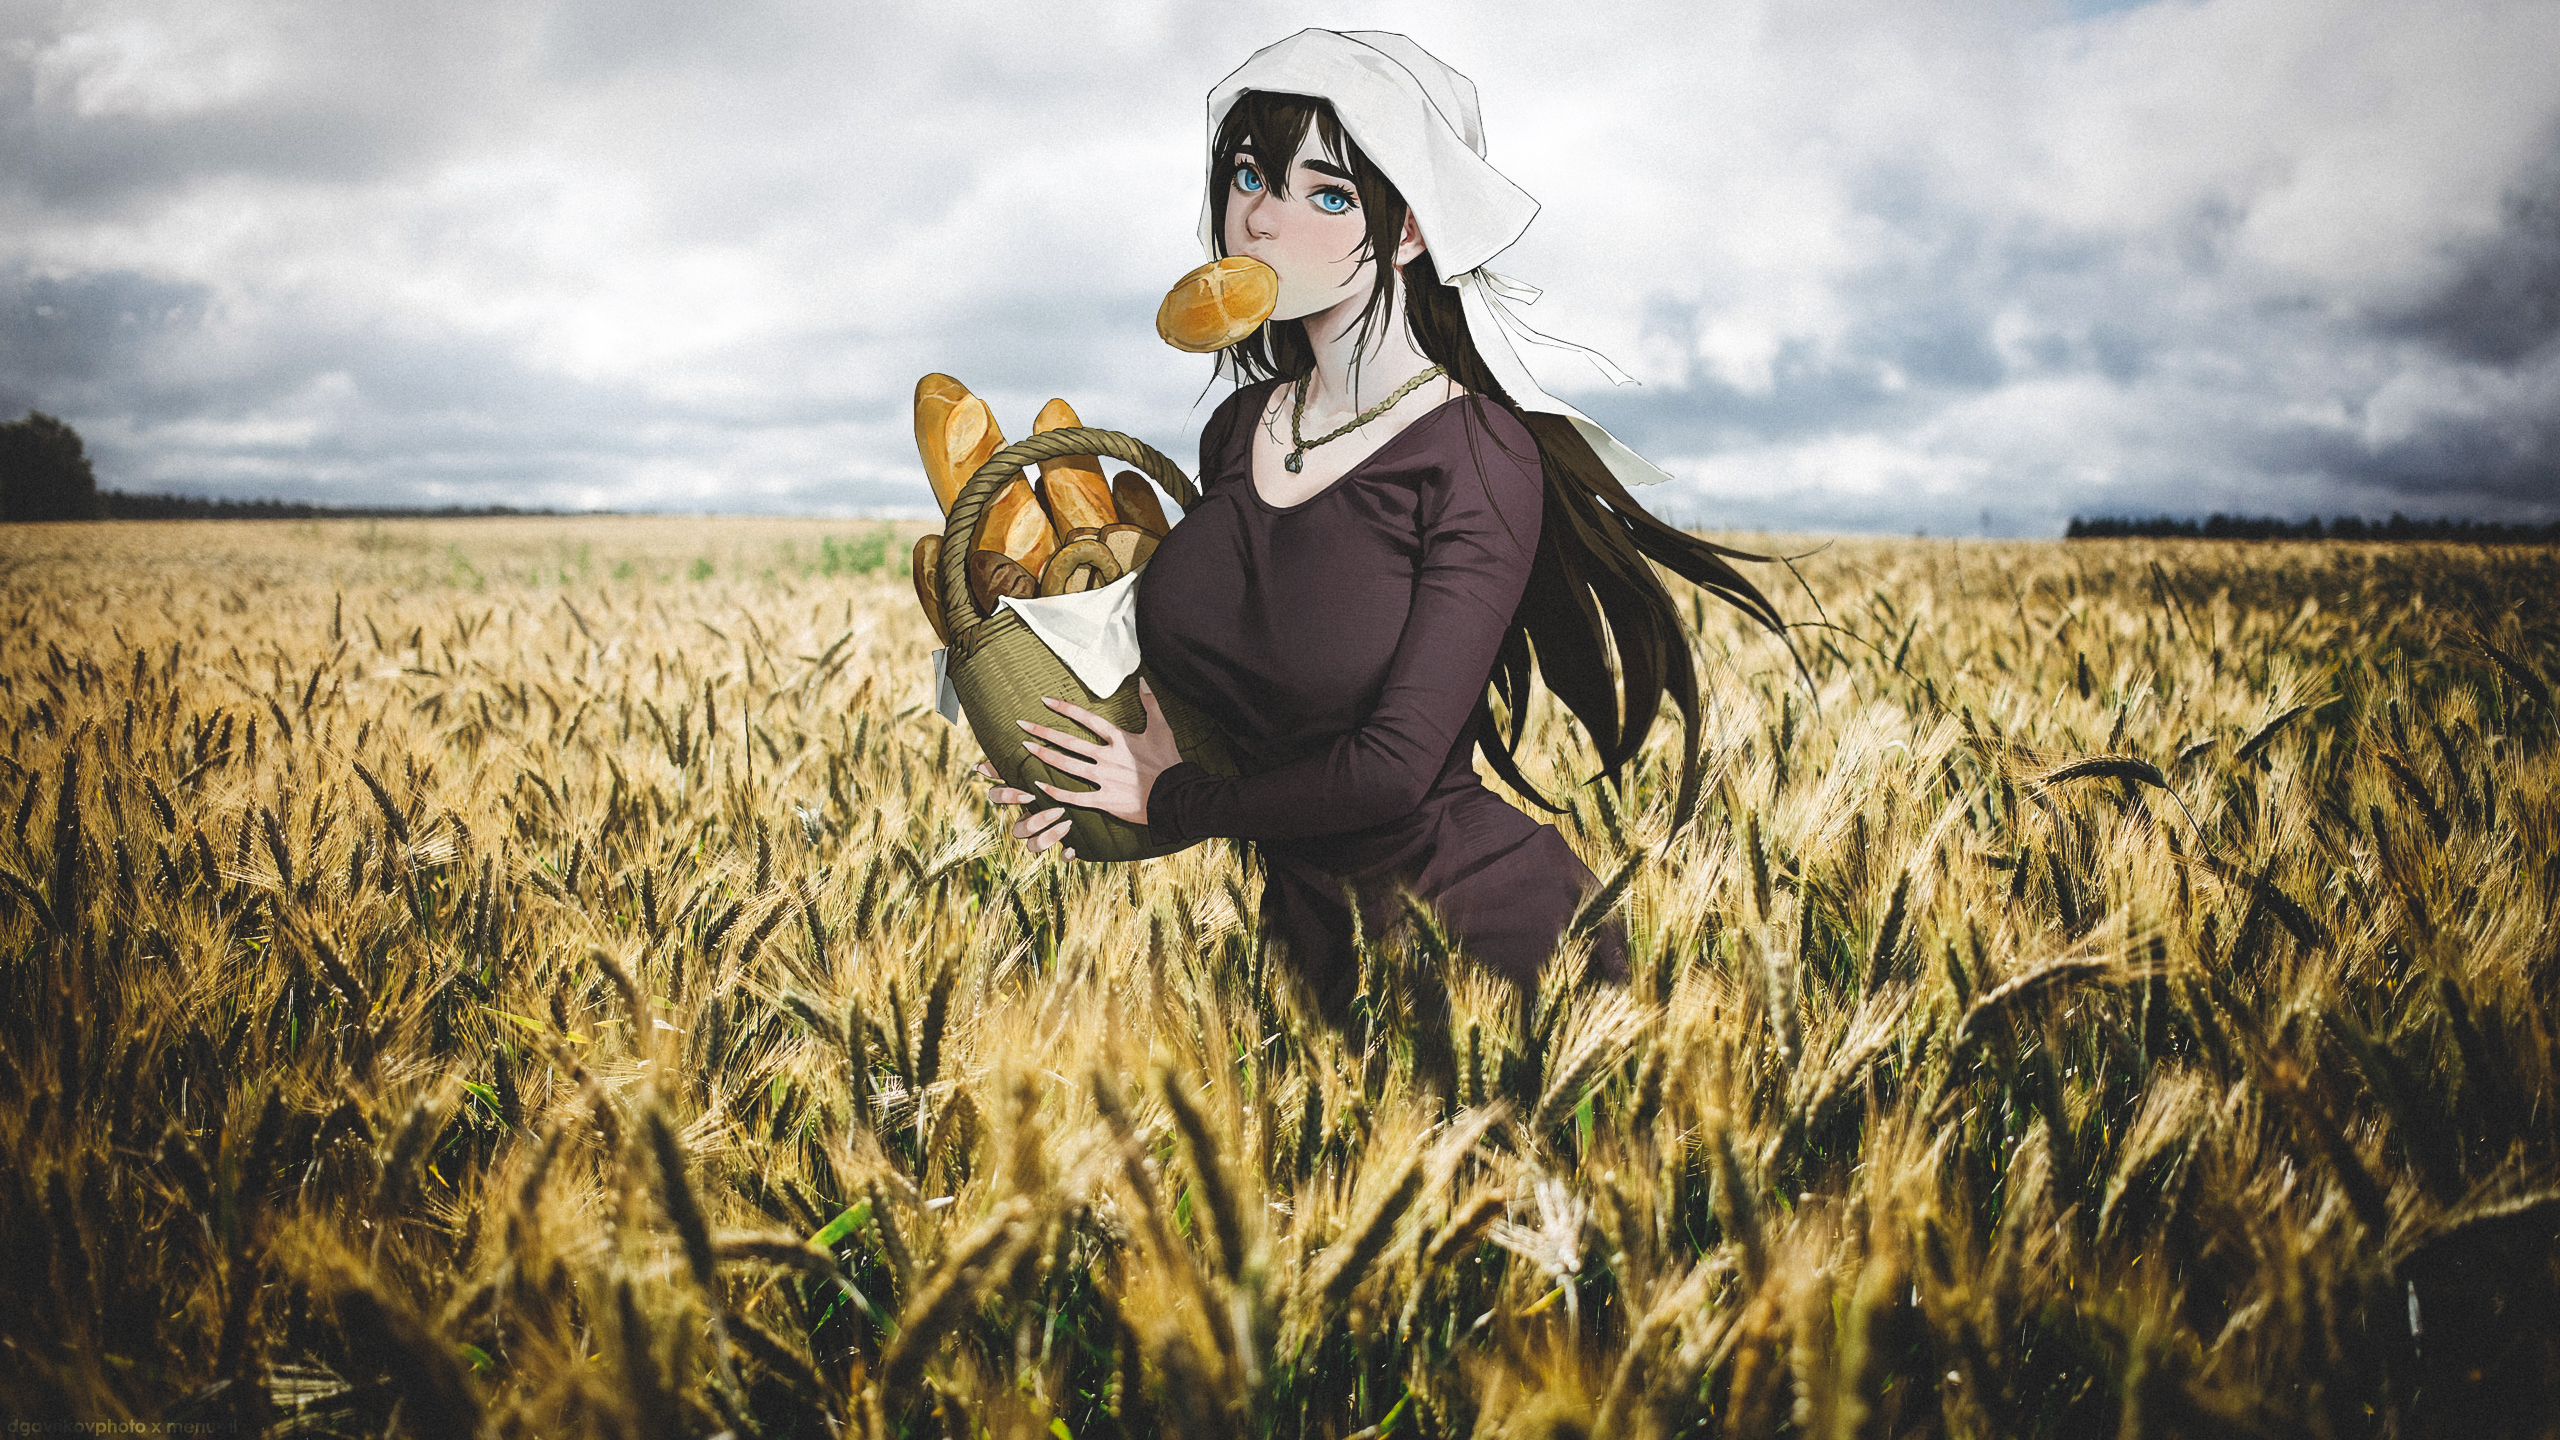 Field Wheat Collage Bread Fantasy Girl 2560x1440